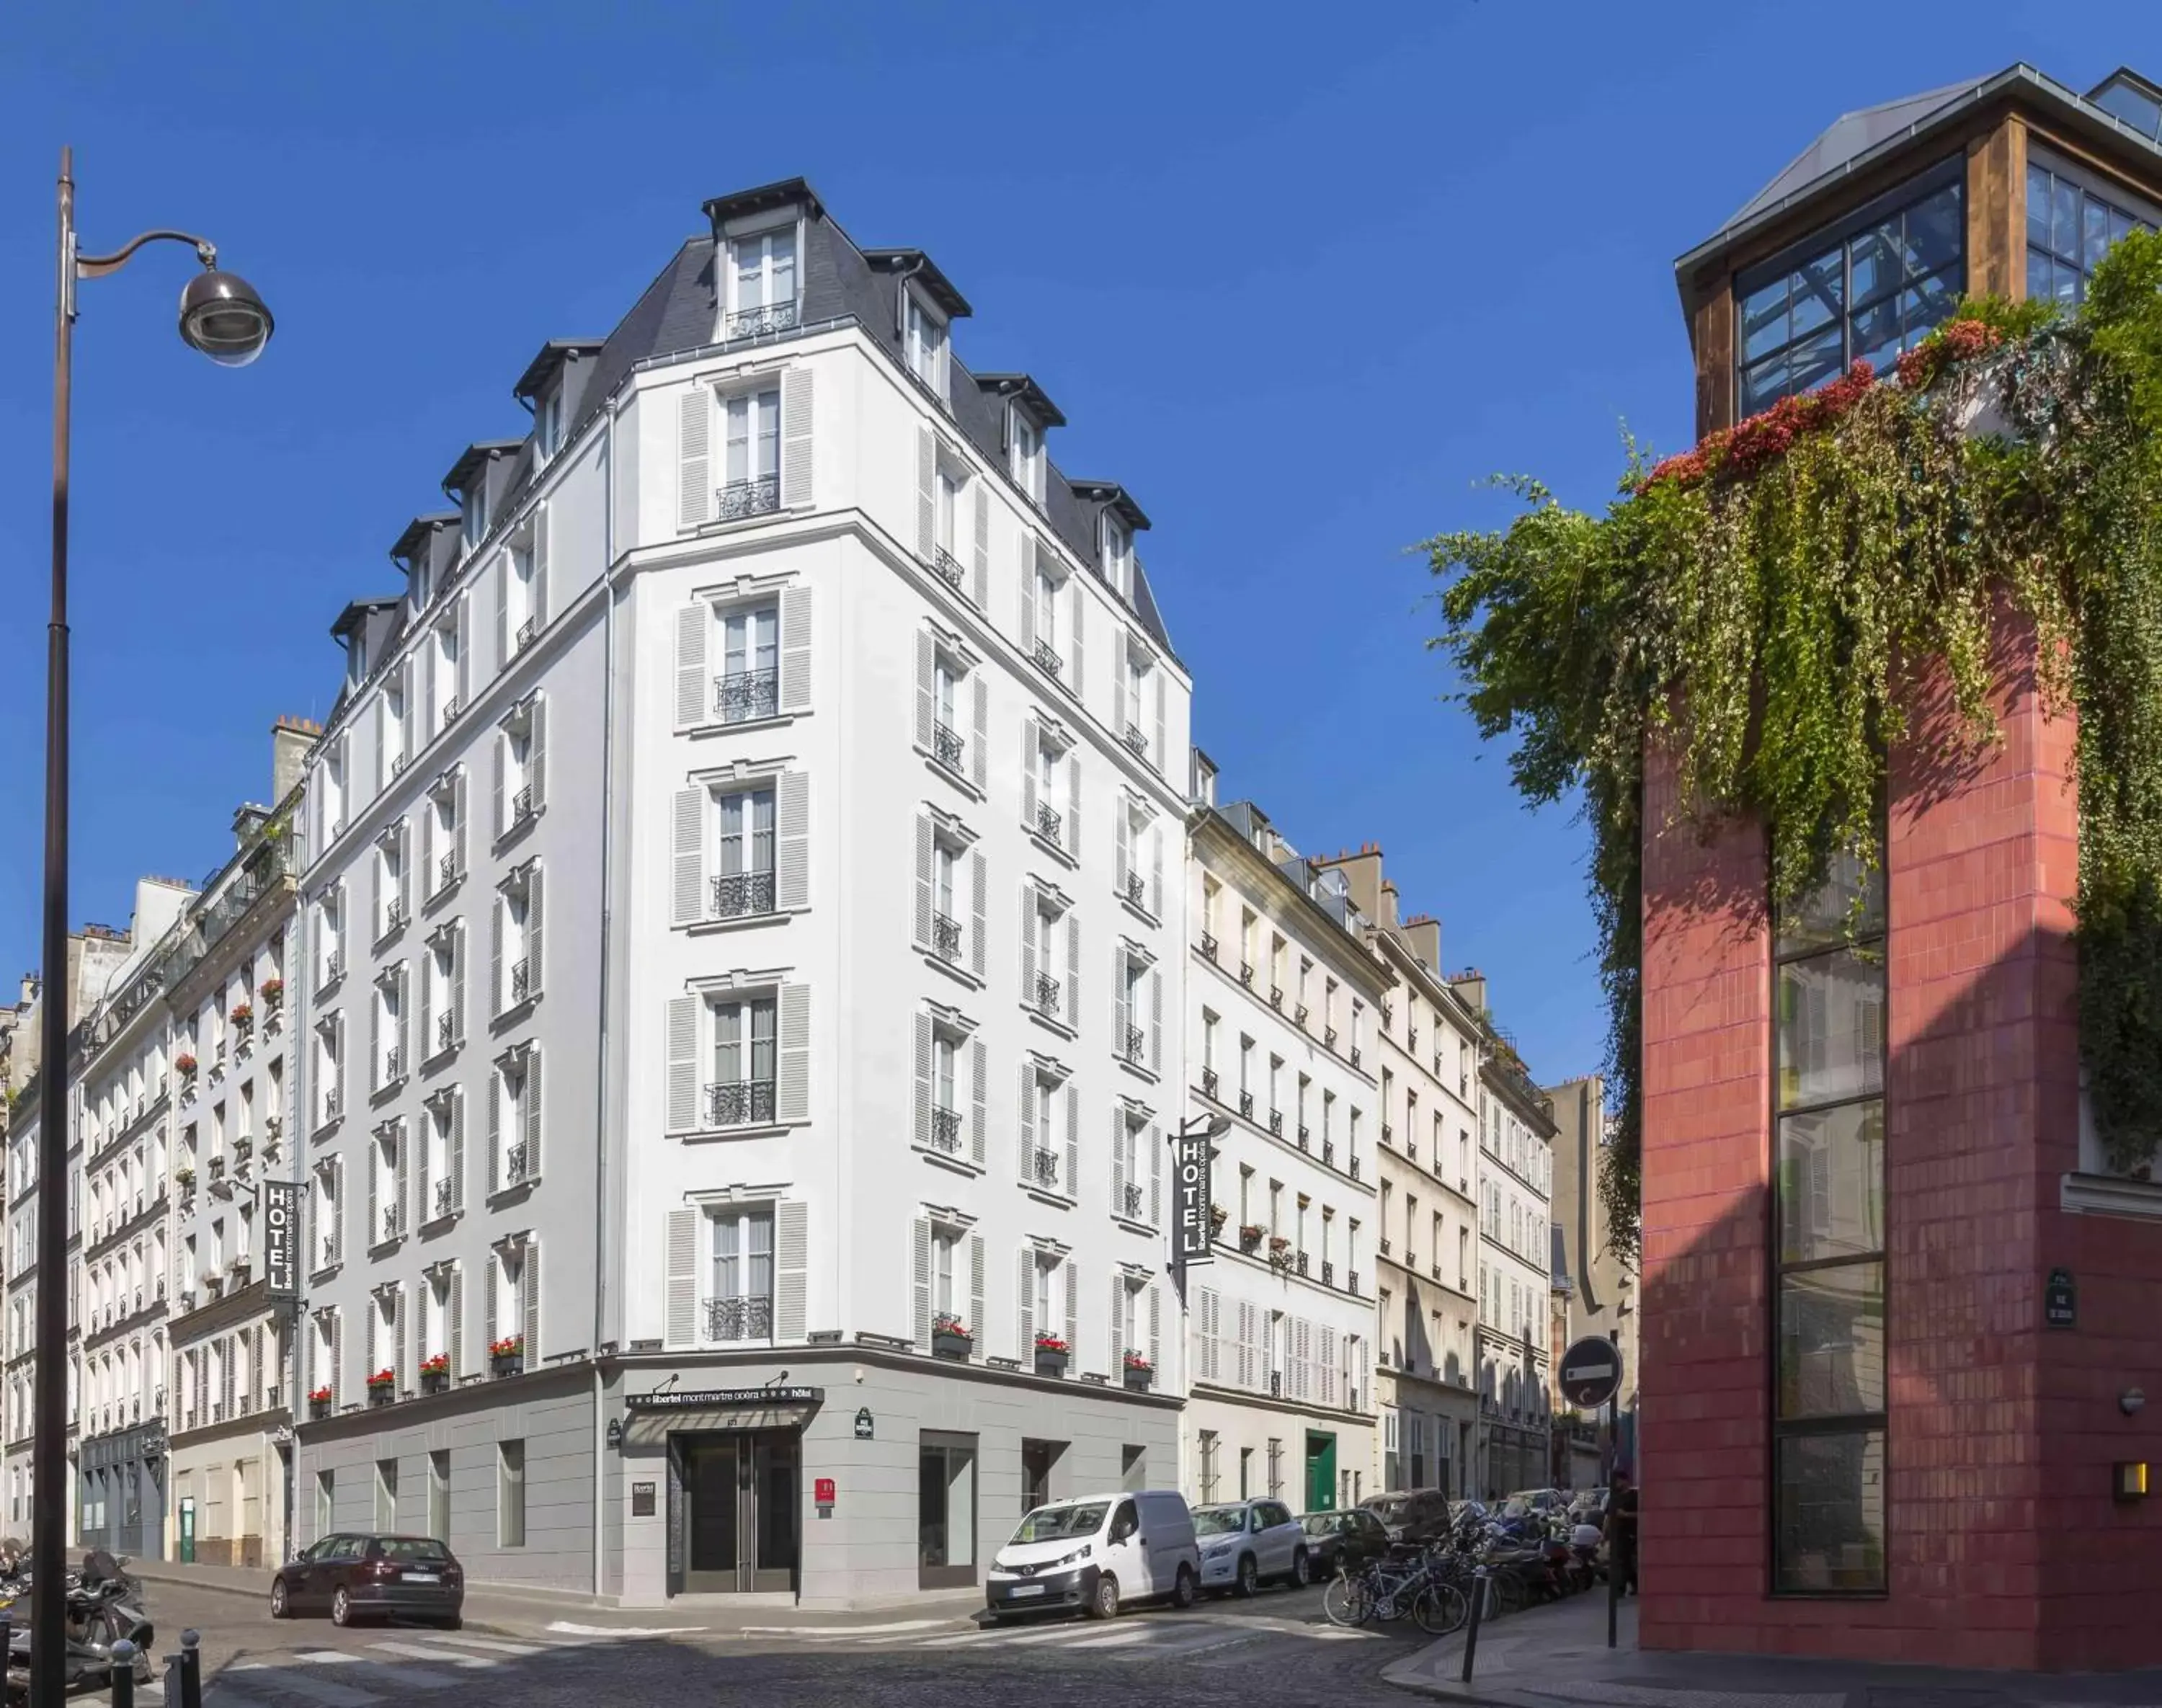 Property building in Libertel Montmartre Opéra